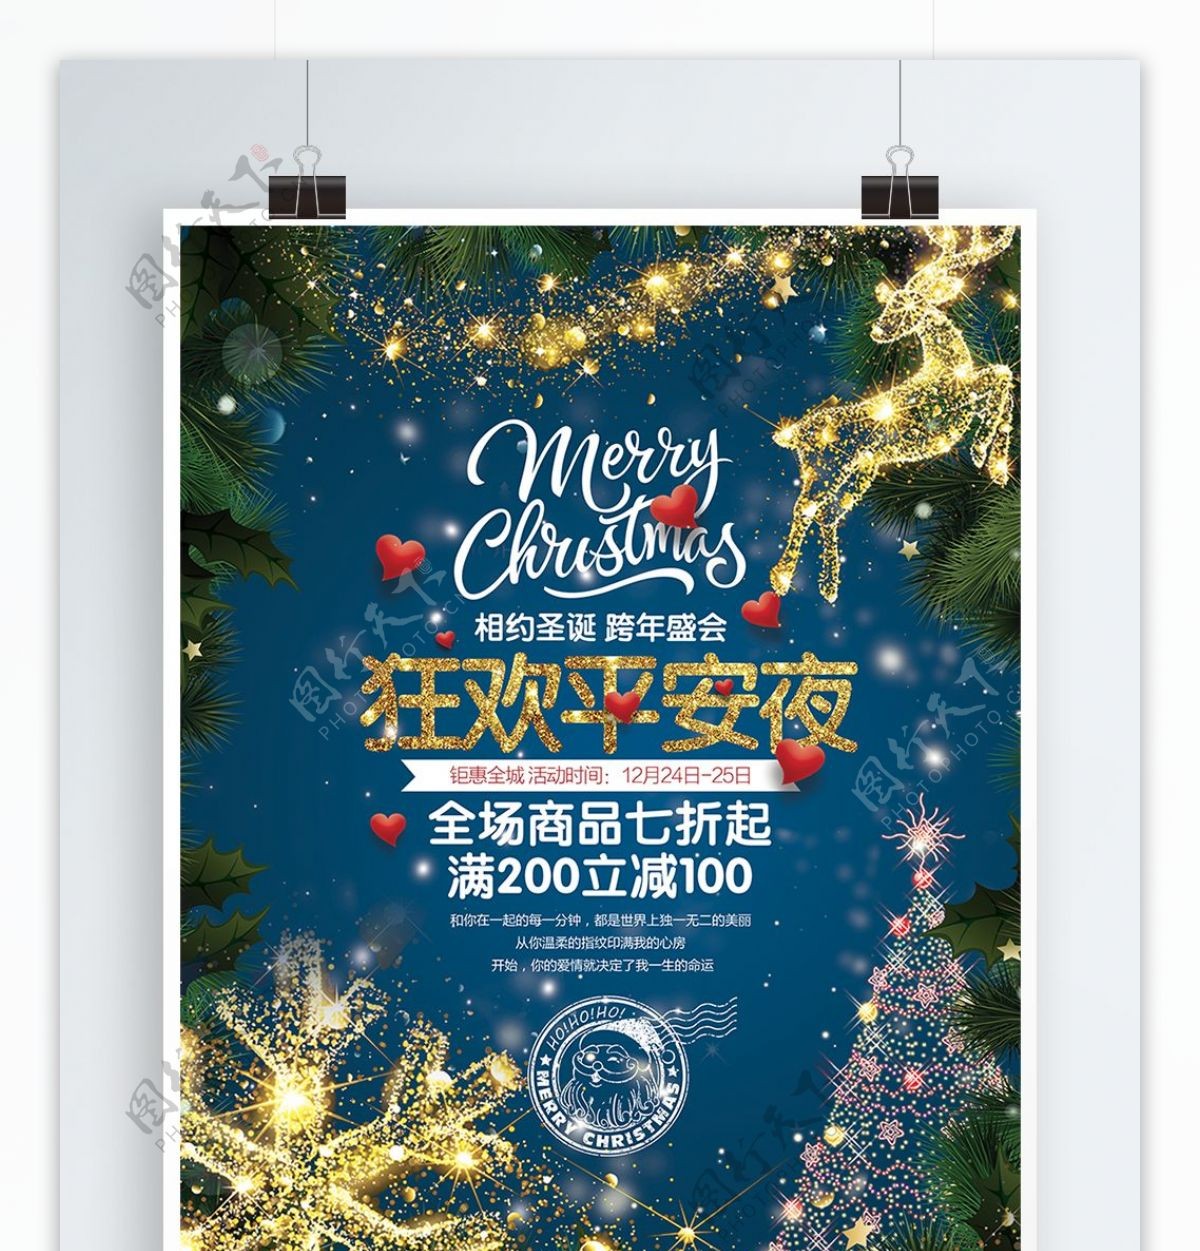 酷炫时尚狂欢平安夜圣诞节宣传促销海报展板